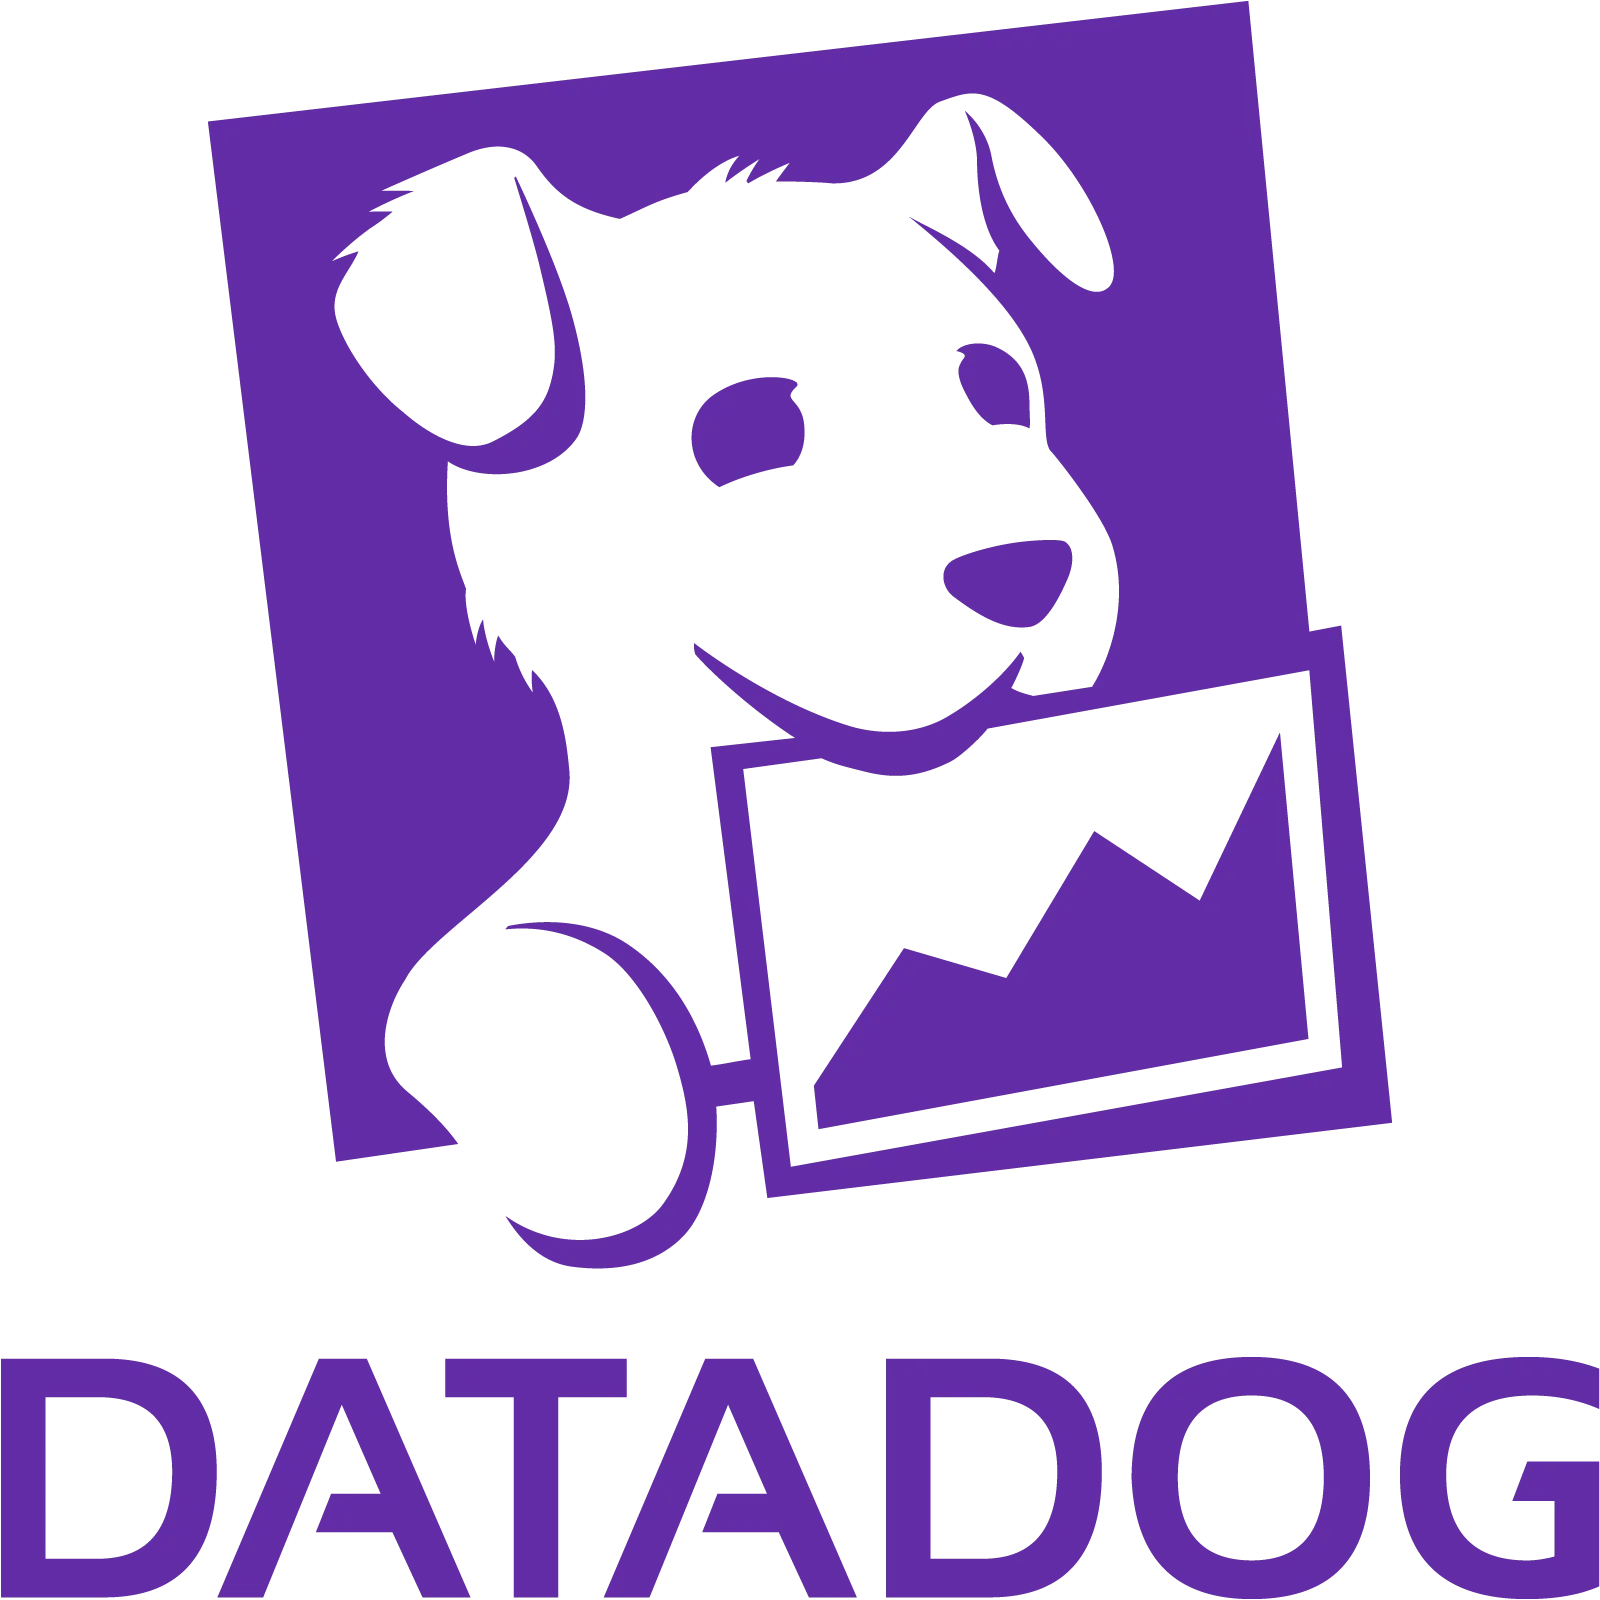 Datadog